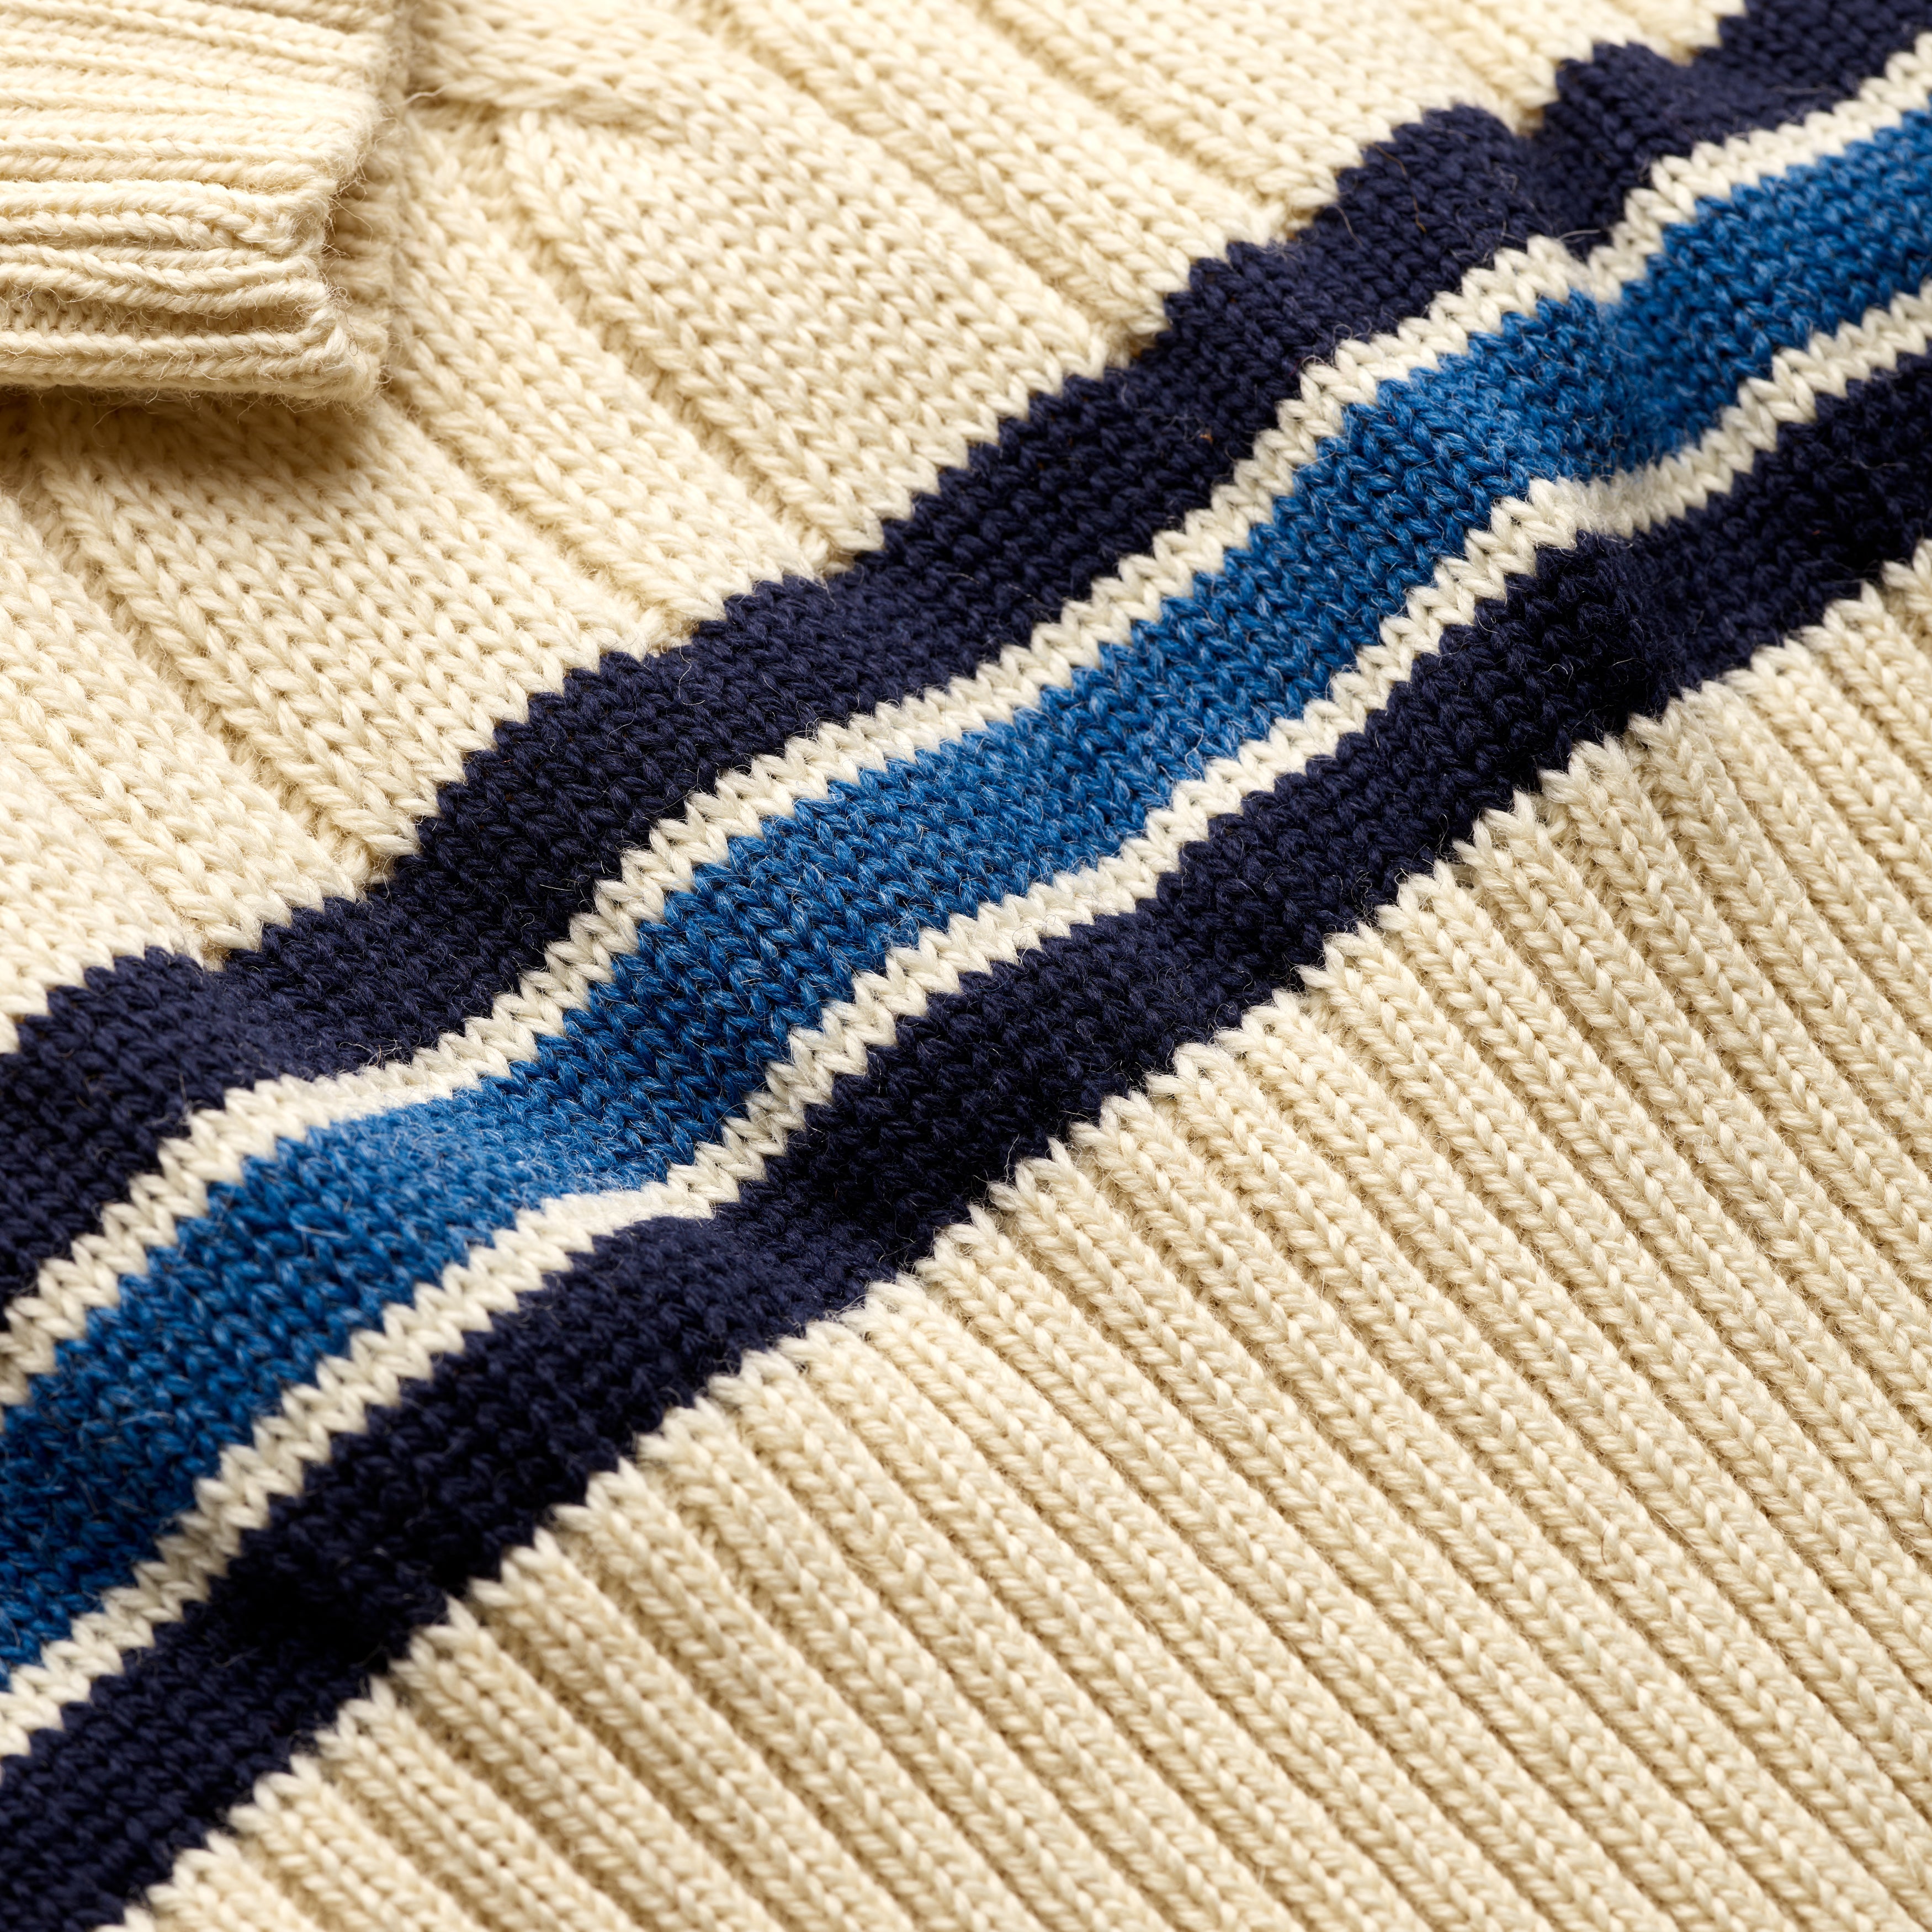 Fox Cricket Club Ecru Sweater with Navy & Sky Blue Stripes